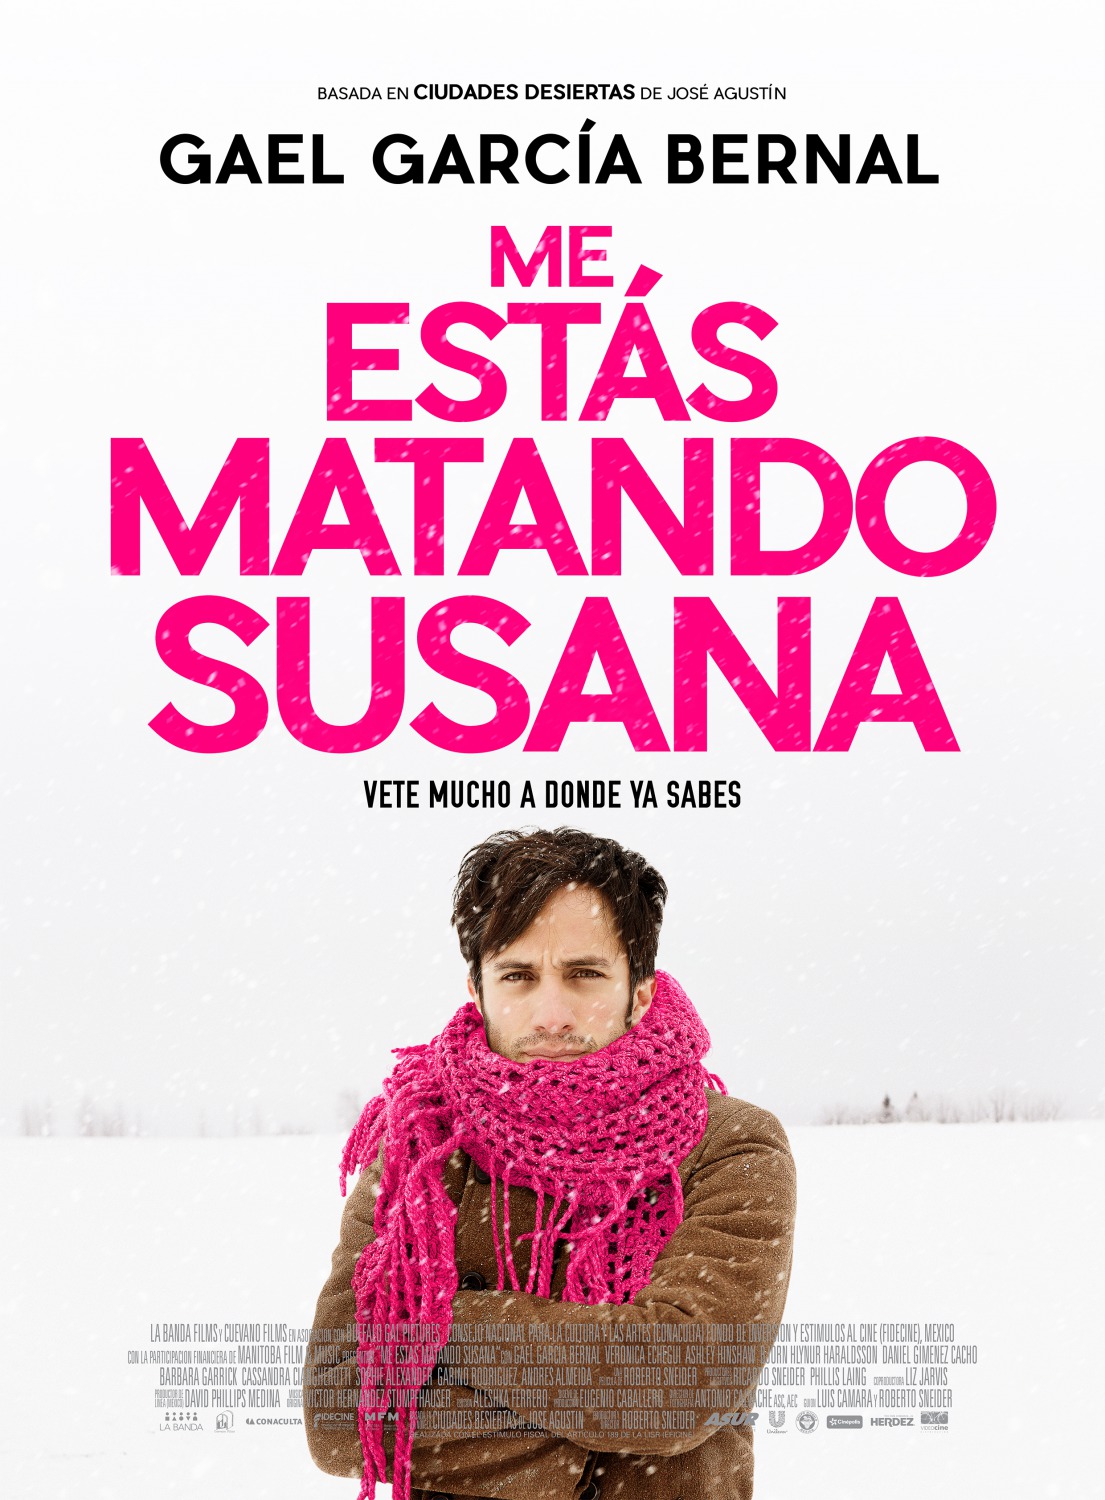 Extra Large Movie Poster Image for Me estás matando Susana 